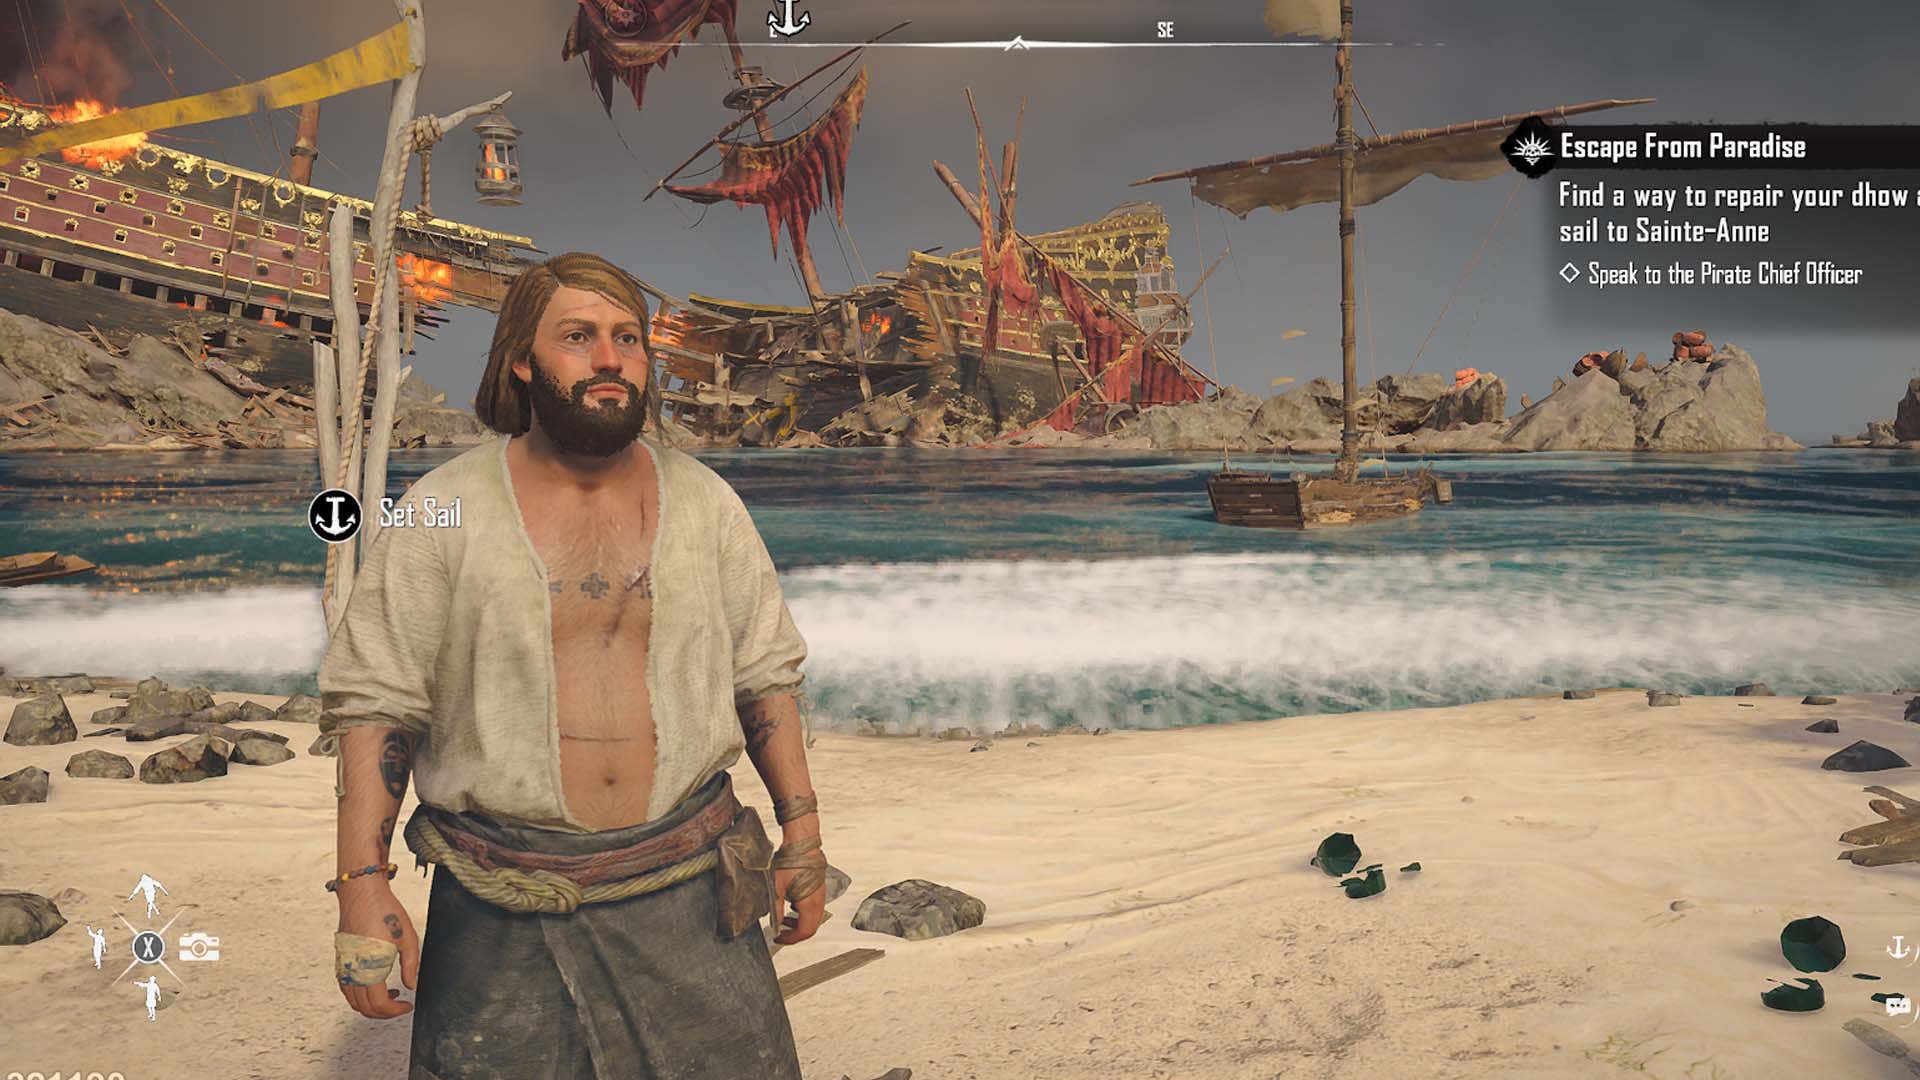 Ekran görüntüsünde enkaz halindeki bir geminin yakınındaki sahilde duran bir adam görülüyor. 